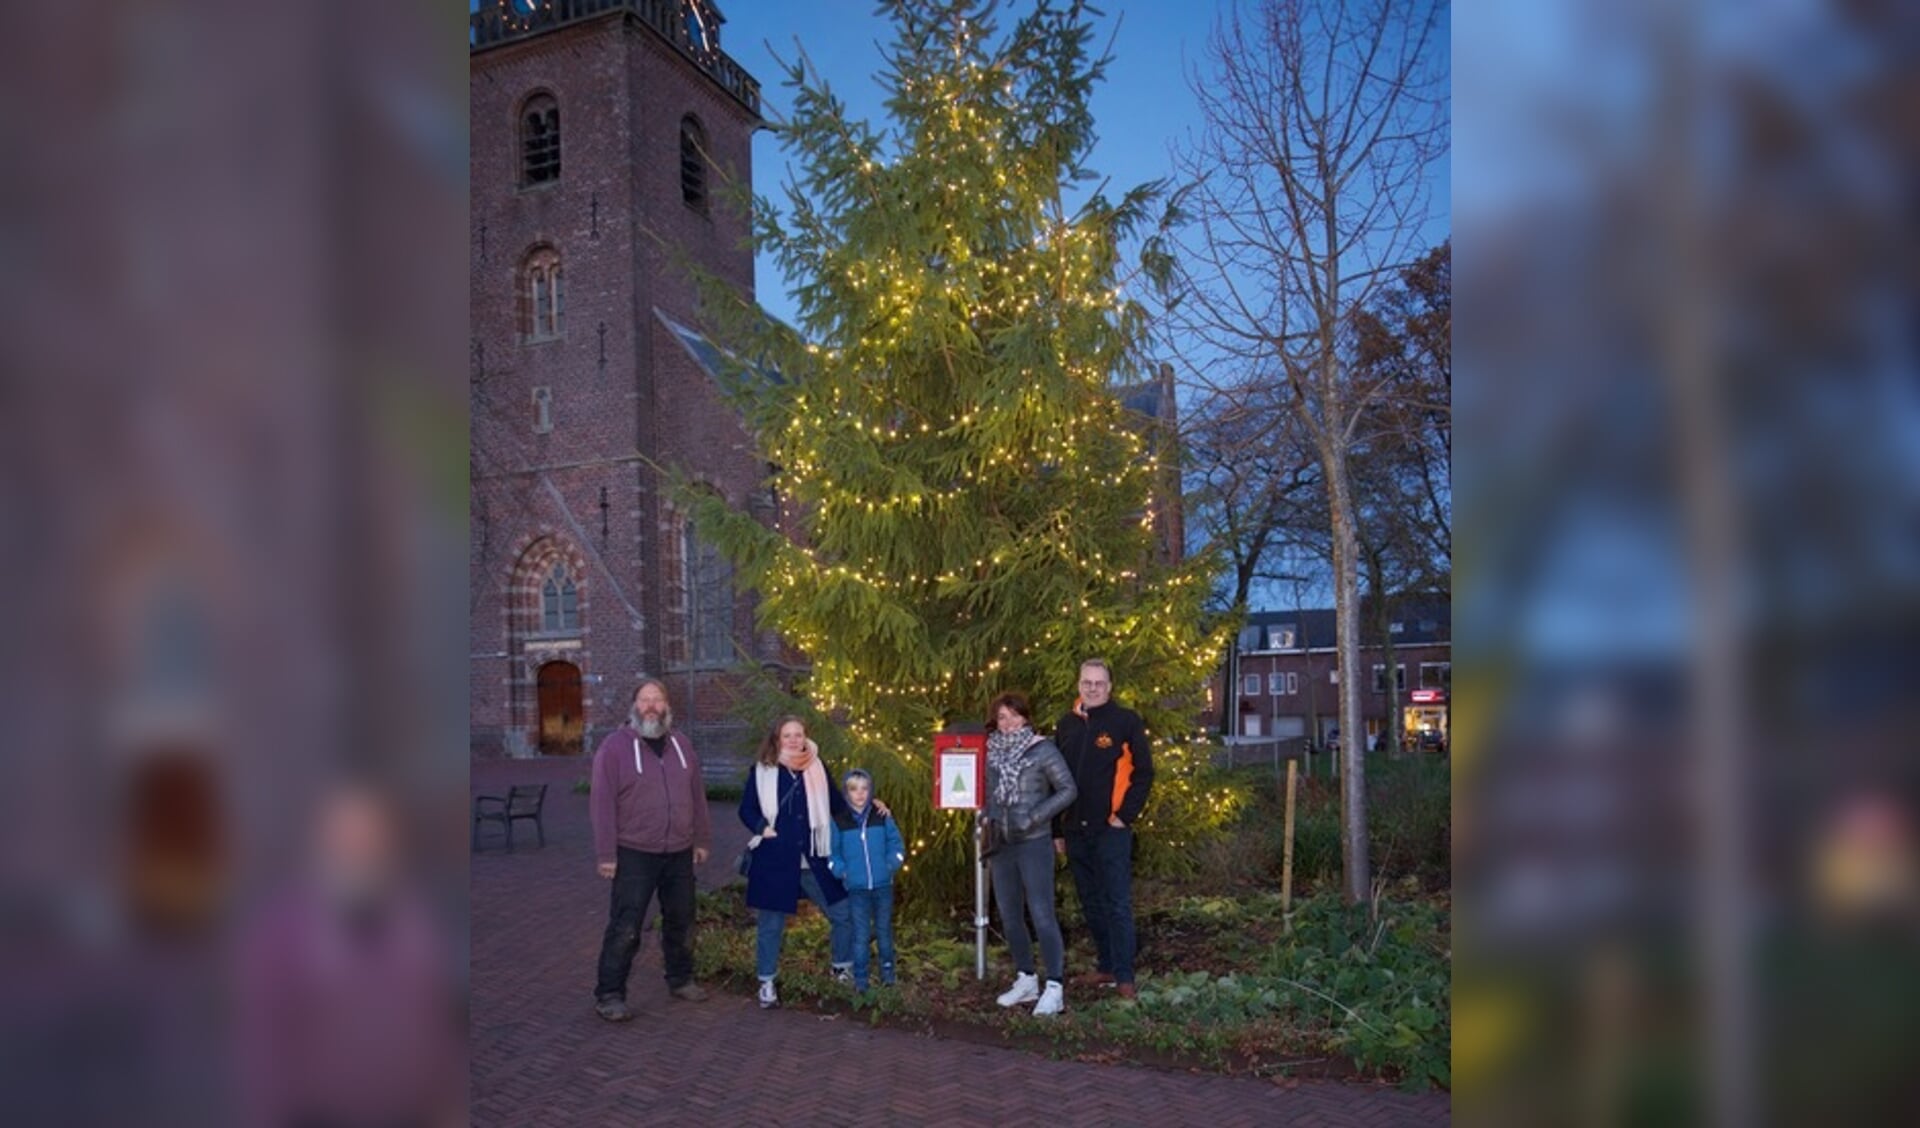 • De kerstboom in het dorpscentrum van Harmelen.